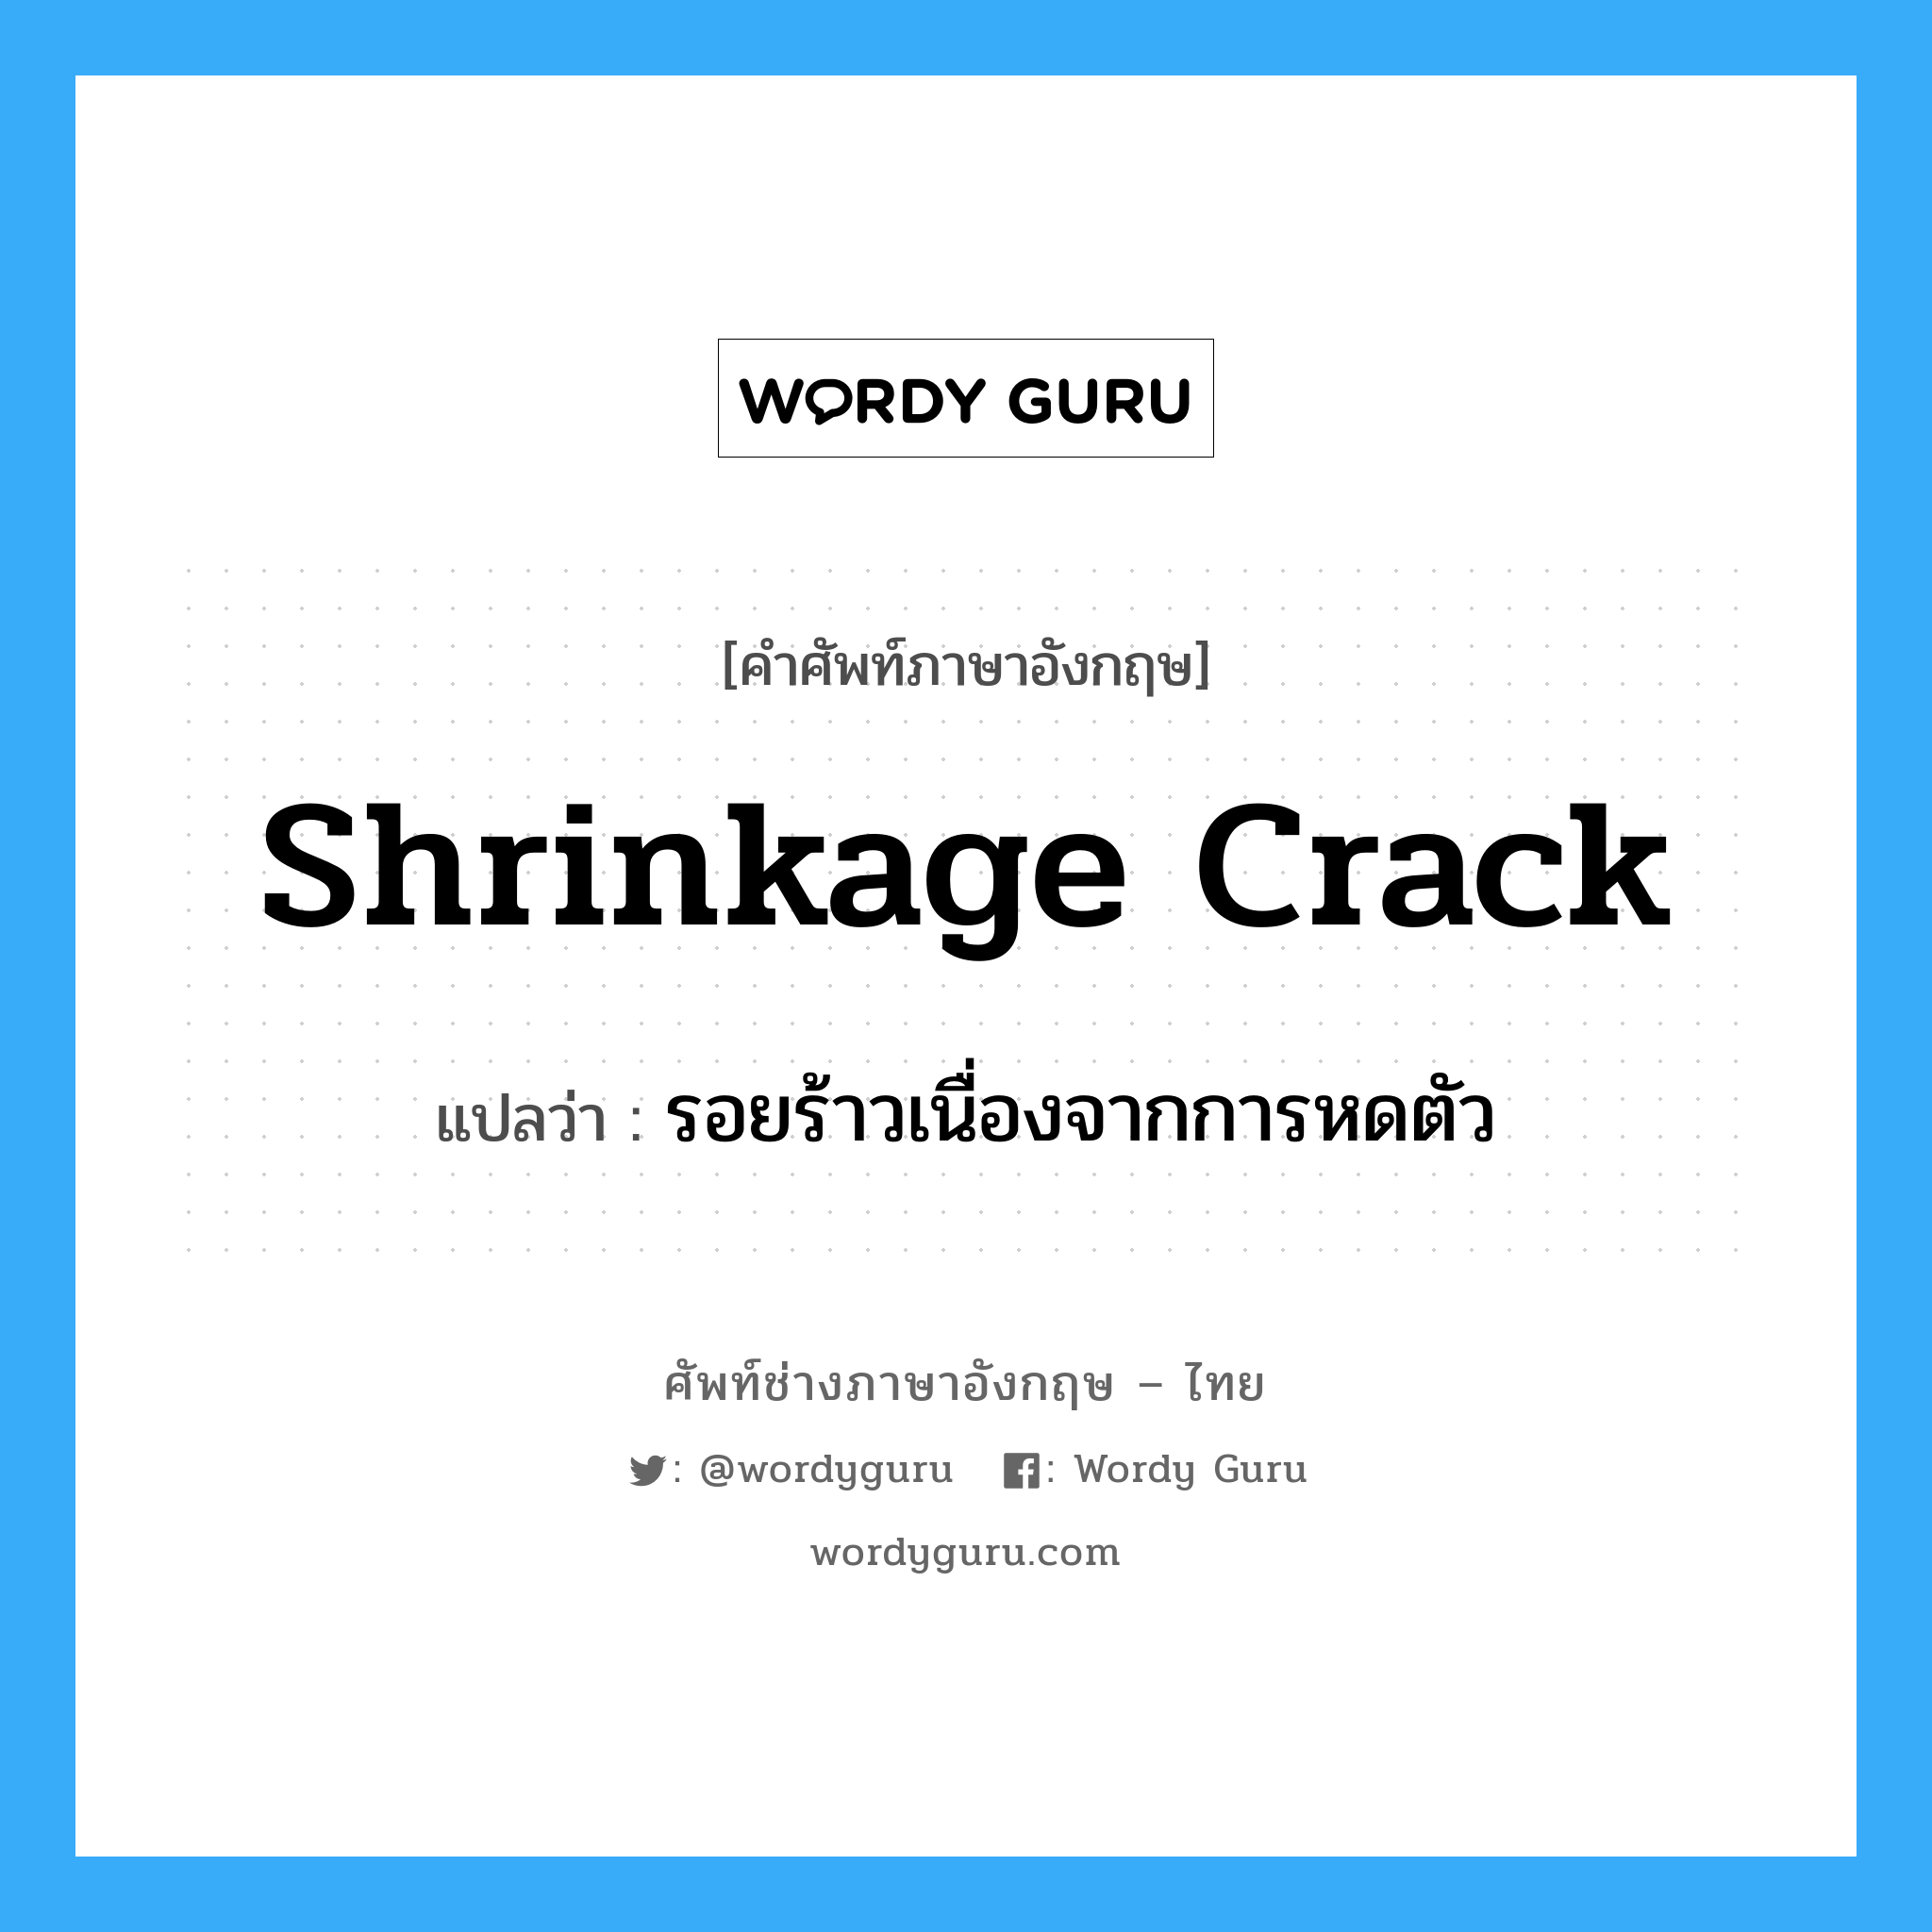 shrinkage crack แปลว่า?, คำศัพท์ช่างภาษาอังกฤษ - ไทย shrinkage crack คำศัพท์ภาษาอังกฤษ shrinkage crack แปลว่า รอยร้าวเนื่องจากการหดตัว